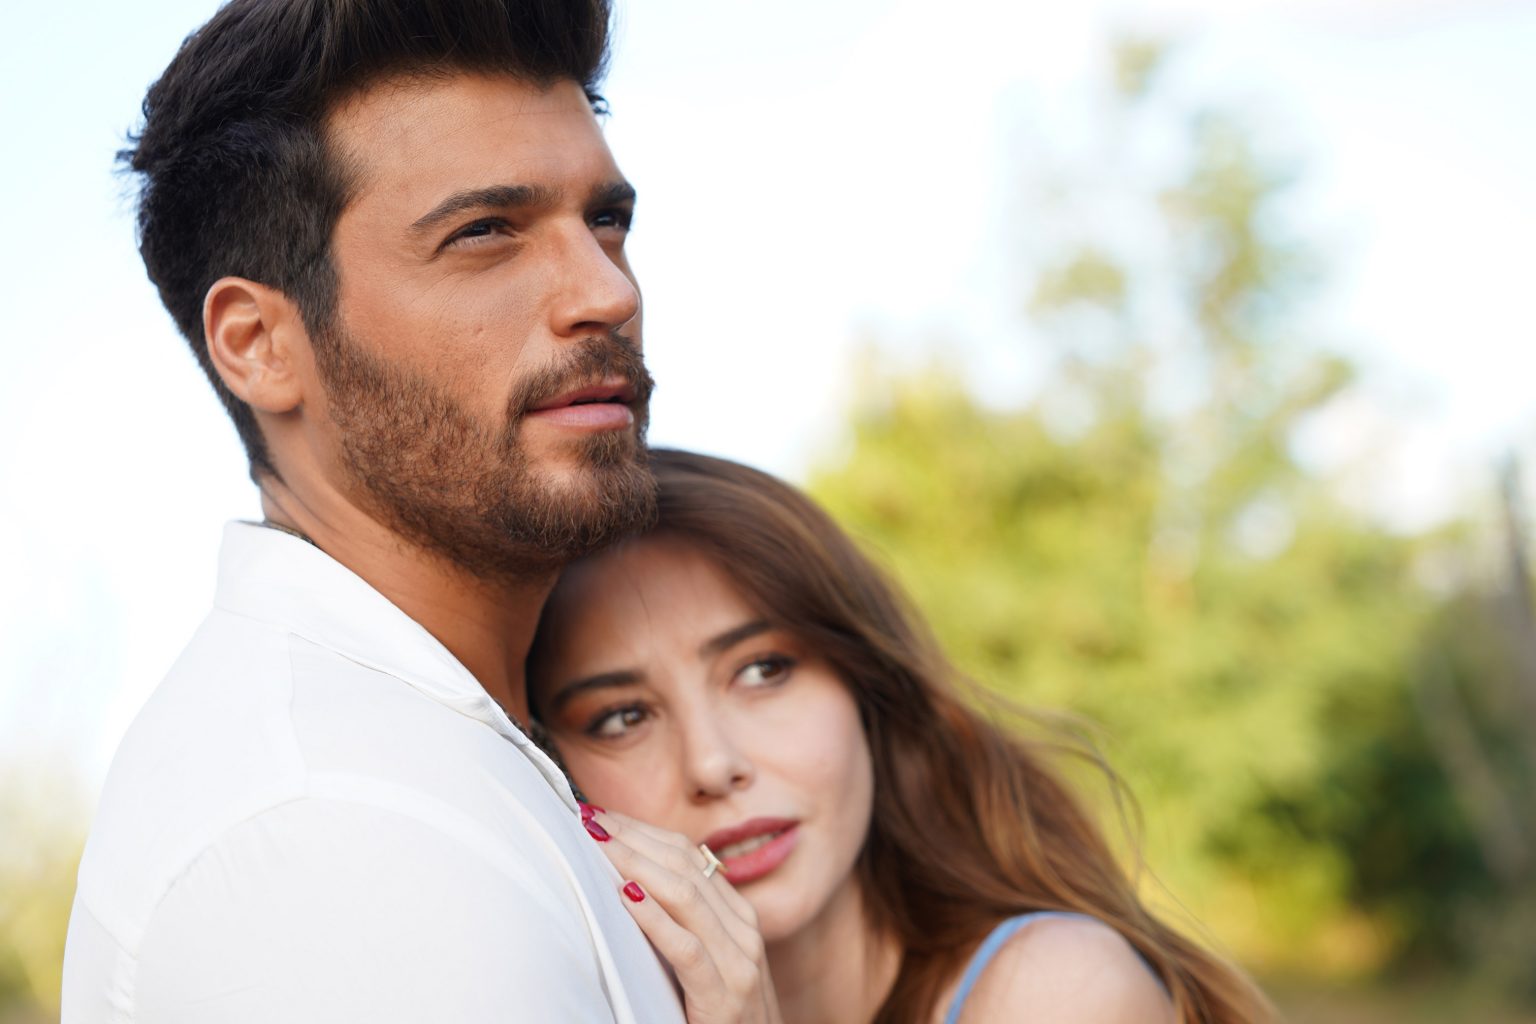 Cena da novela Bay Yanlis. Na imagem, os protagonistas estão abraçados, com Ezgi está encostada com a cabeça no peito de Özgür. Ele veste uma camisa branca e olha para a frente, enquanto a personagem feminina veste uma blusa de alças.